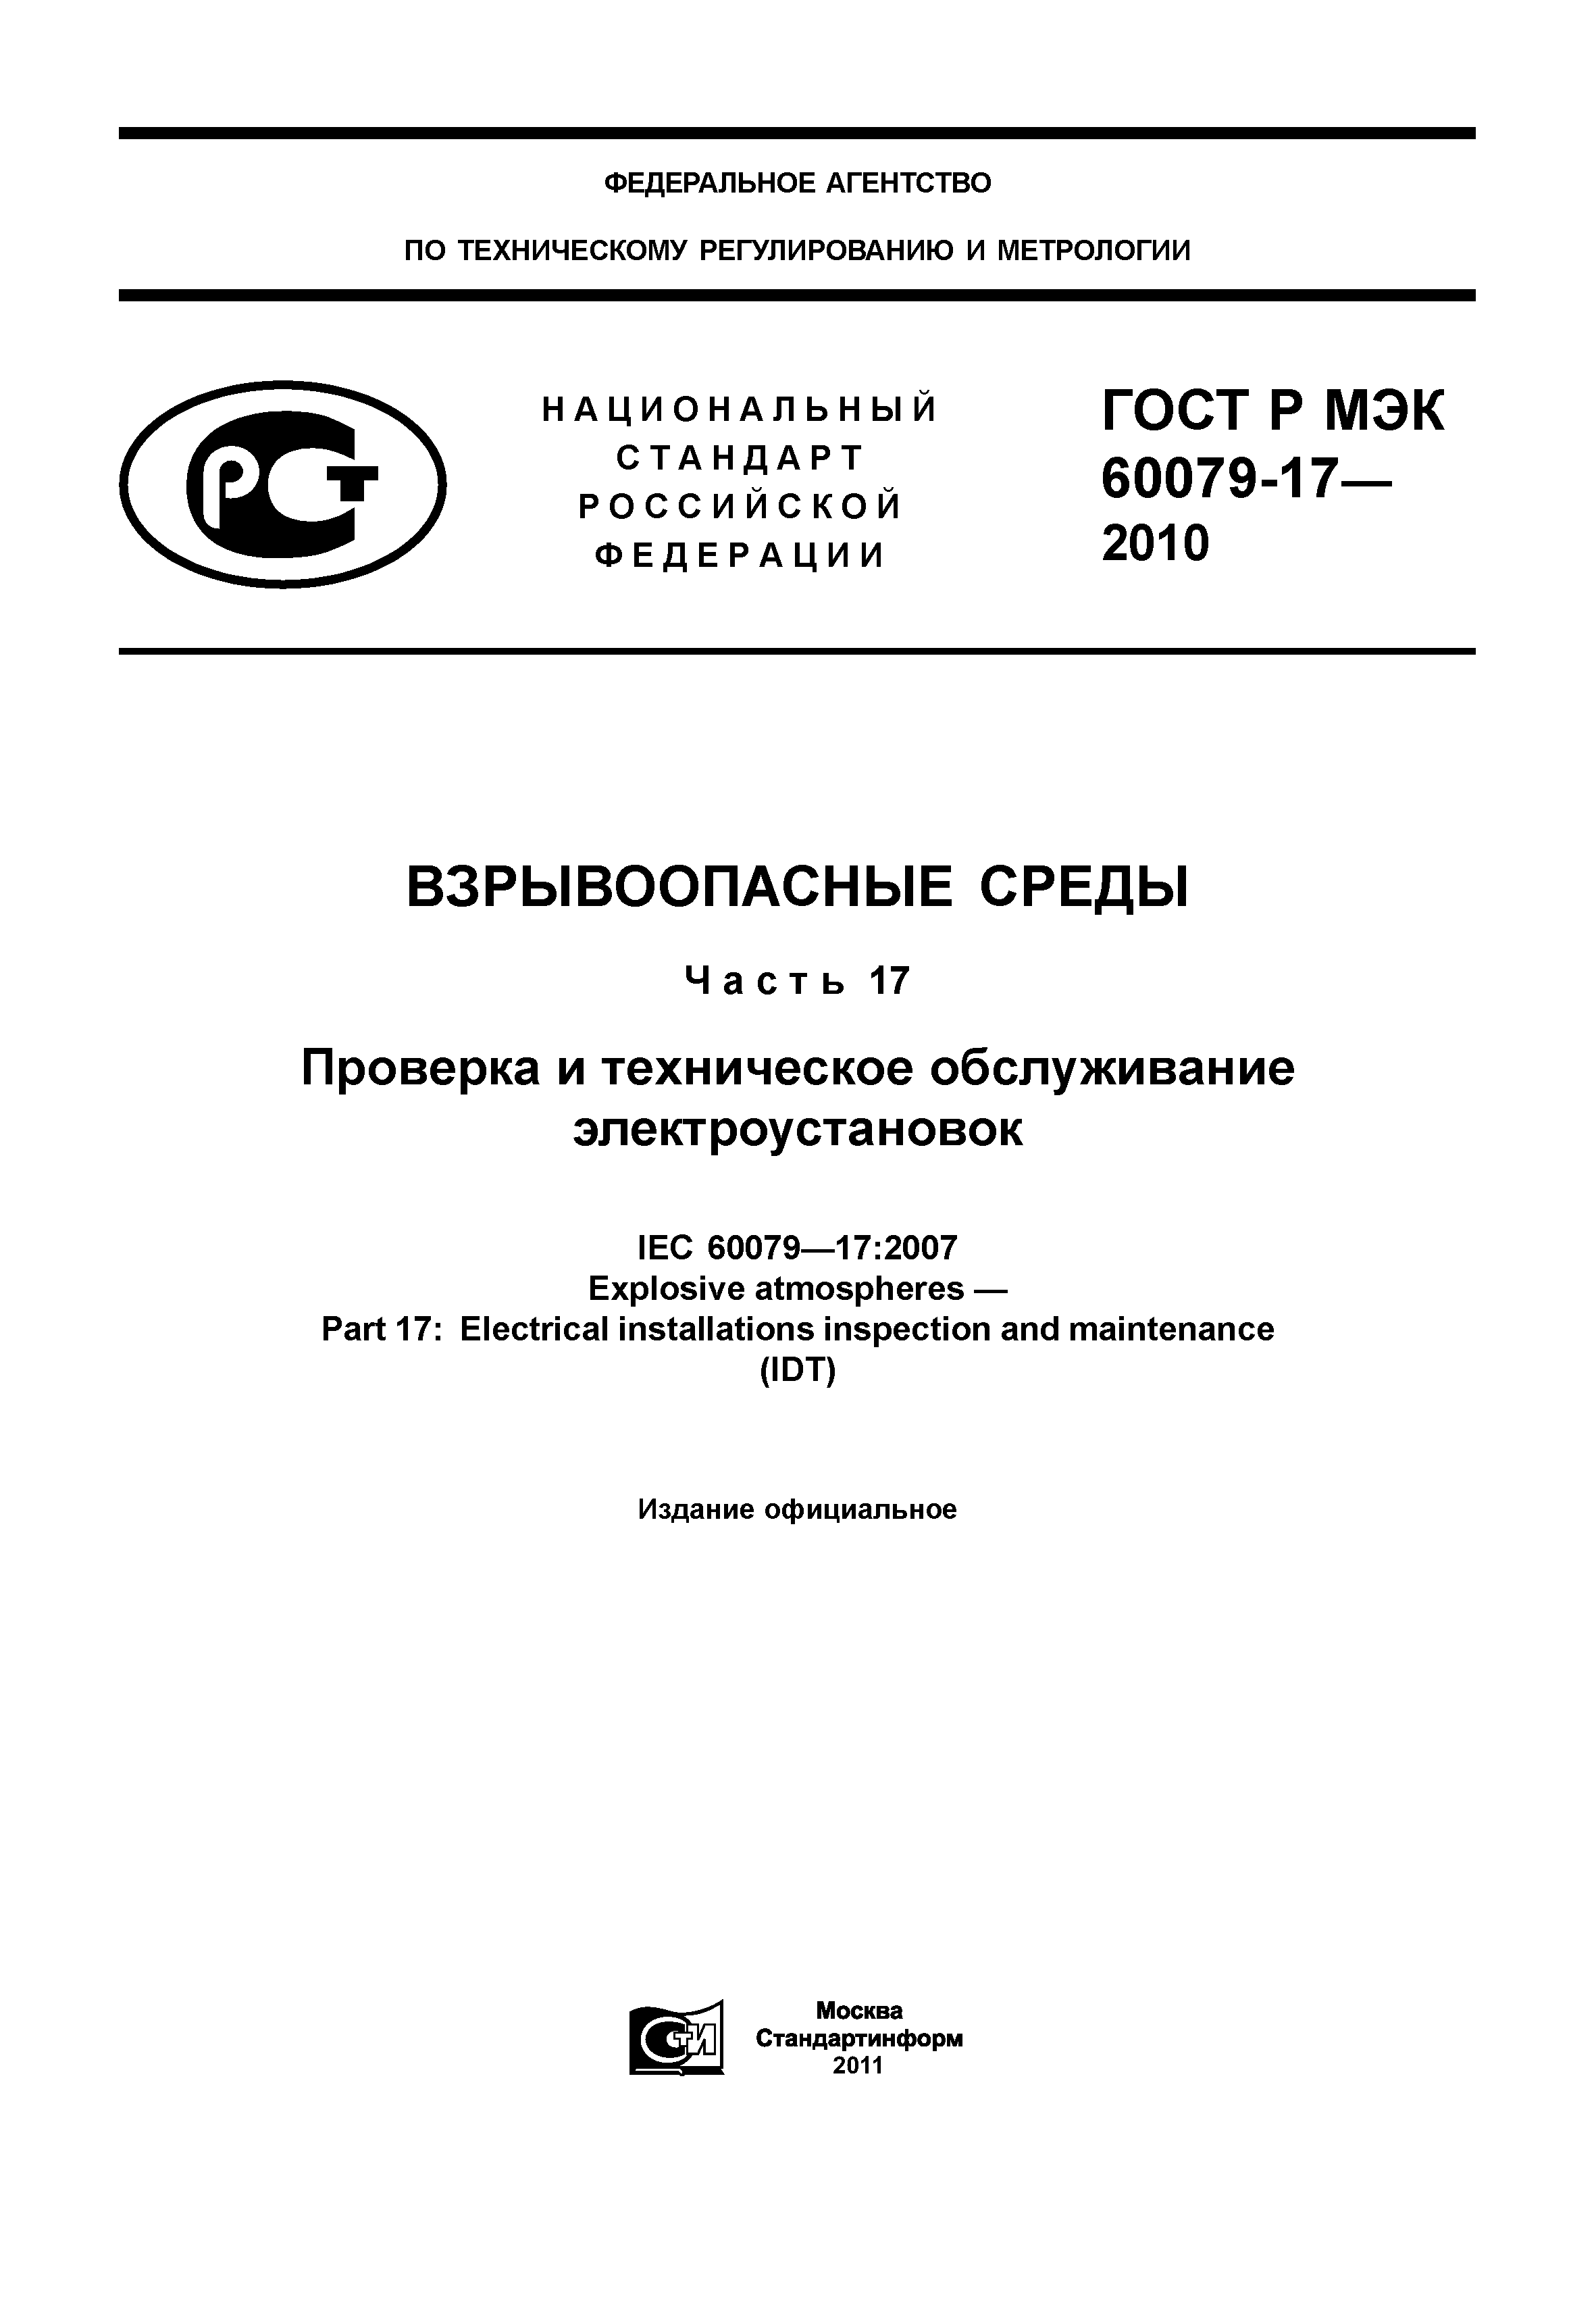 ГОСТ Р МЭК 60079-17-2010